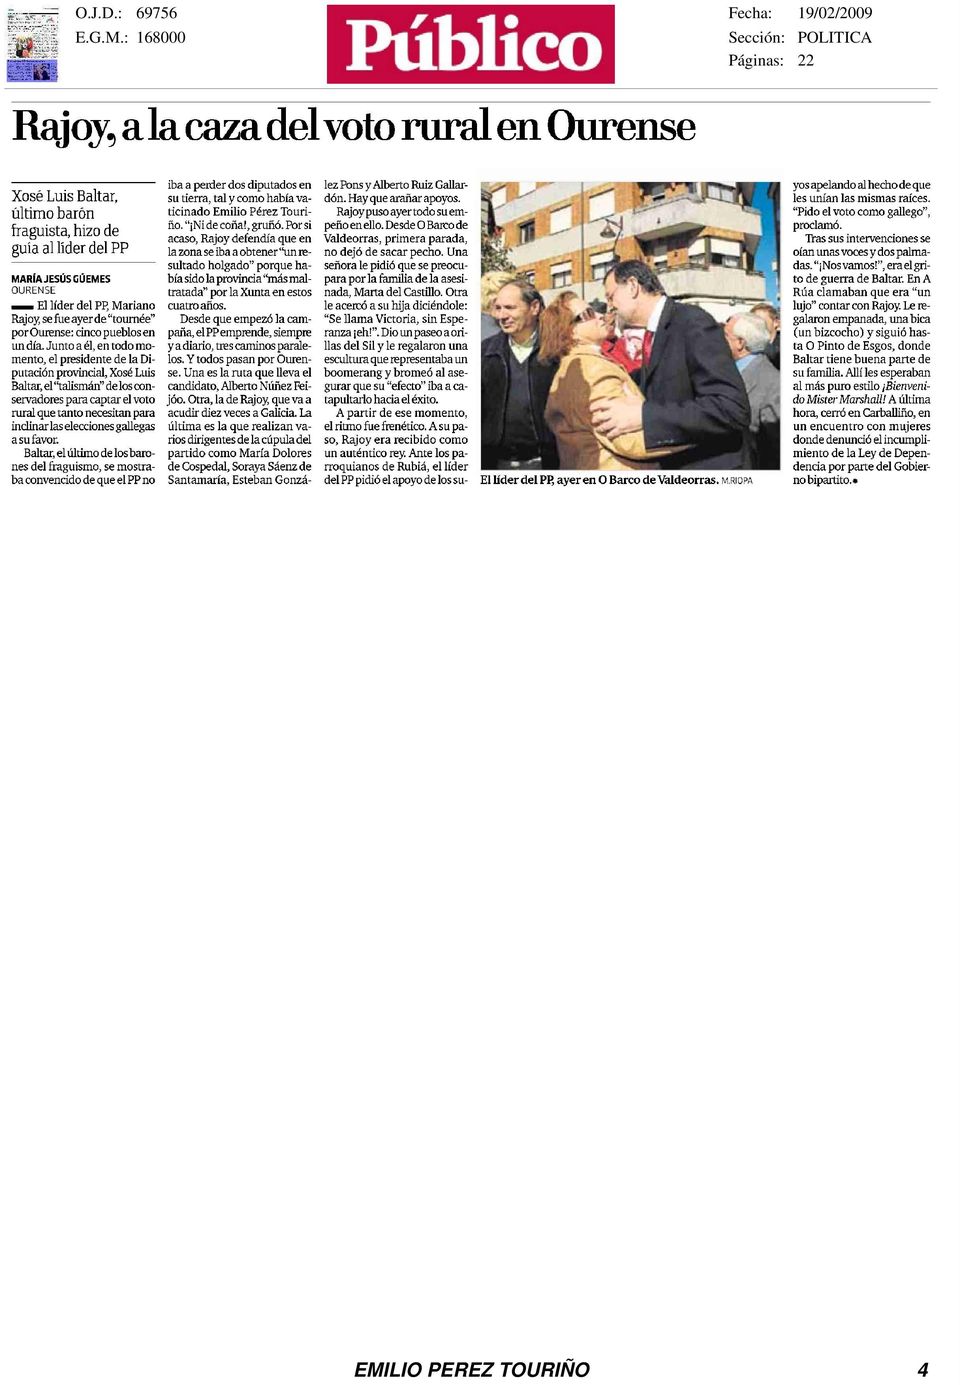 Junto a él, en todo momento, el presidente de la Diputación pmvindal, Xosé Luis Baltar, el "talismán" de los conservadores para captar el voto rural que tanto necesitan para inclinar las elecciones